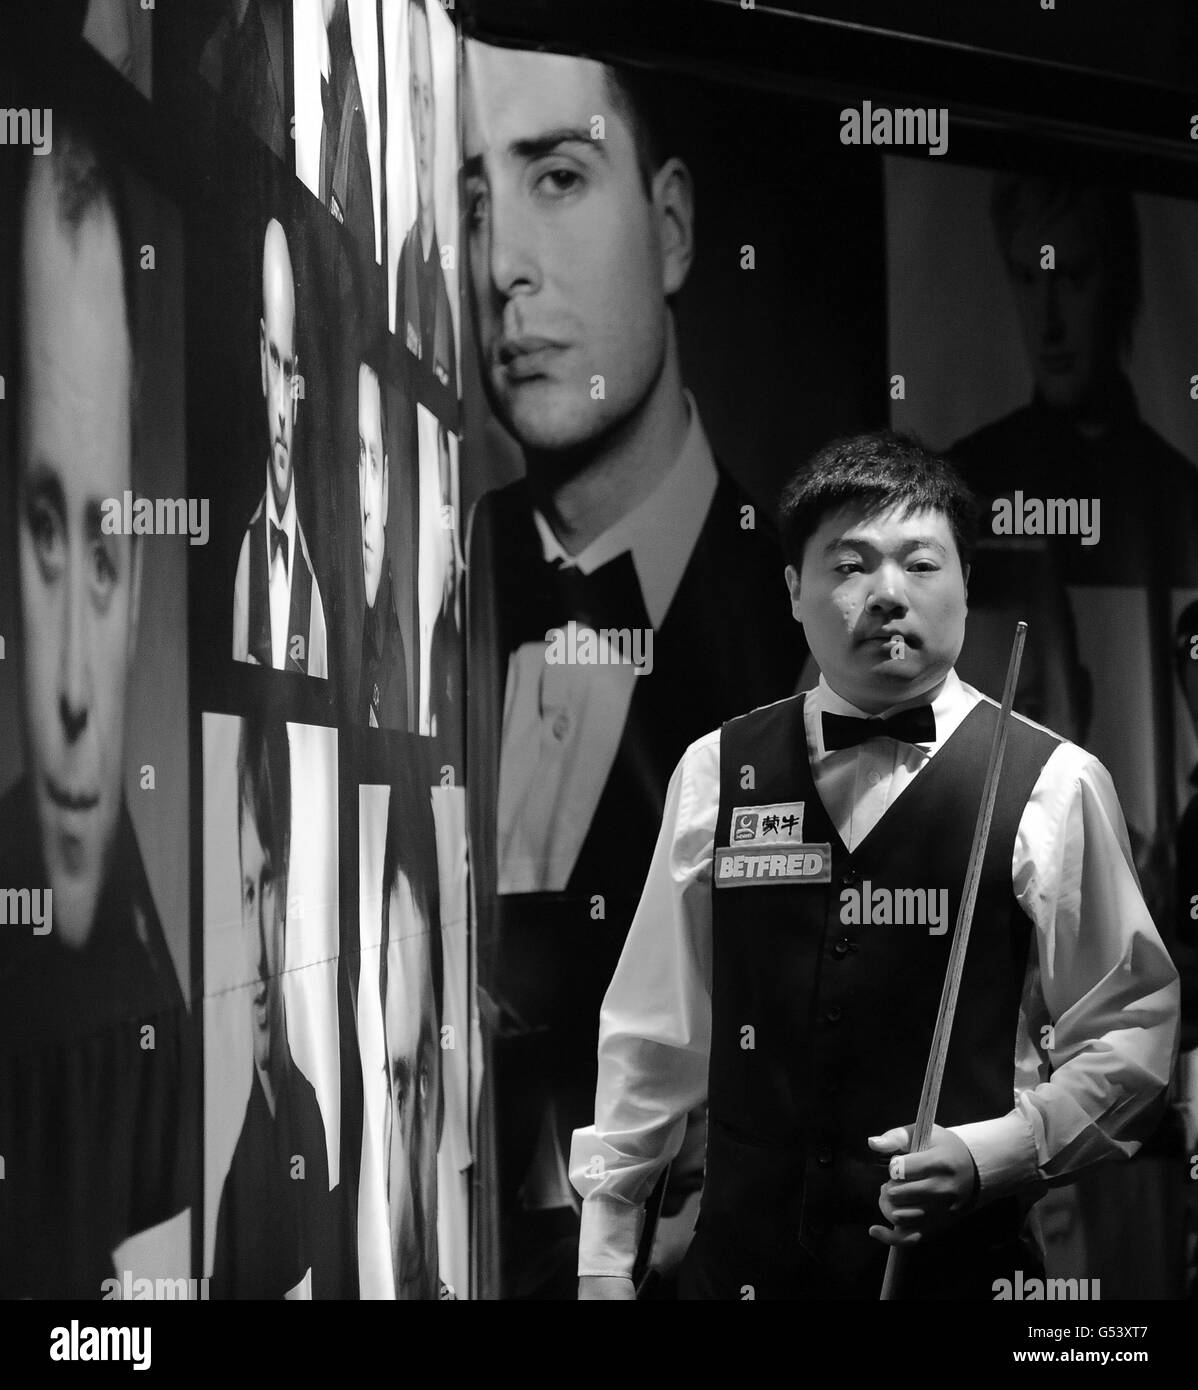 IMMAGINE CONVERTITA IN BIANCO E NERO il Ding Junhui della Cina entra nell'arena per la sua prima partita durante i Campionati Mondiali di Snooker Betfred.com al Crucible Theatre di Sheffield. Foto Stock